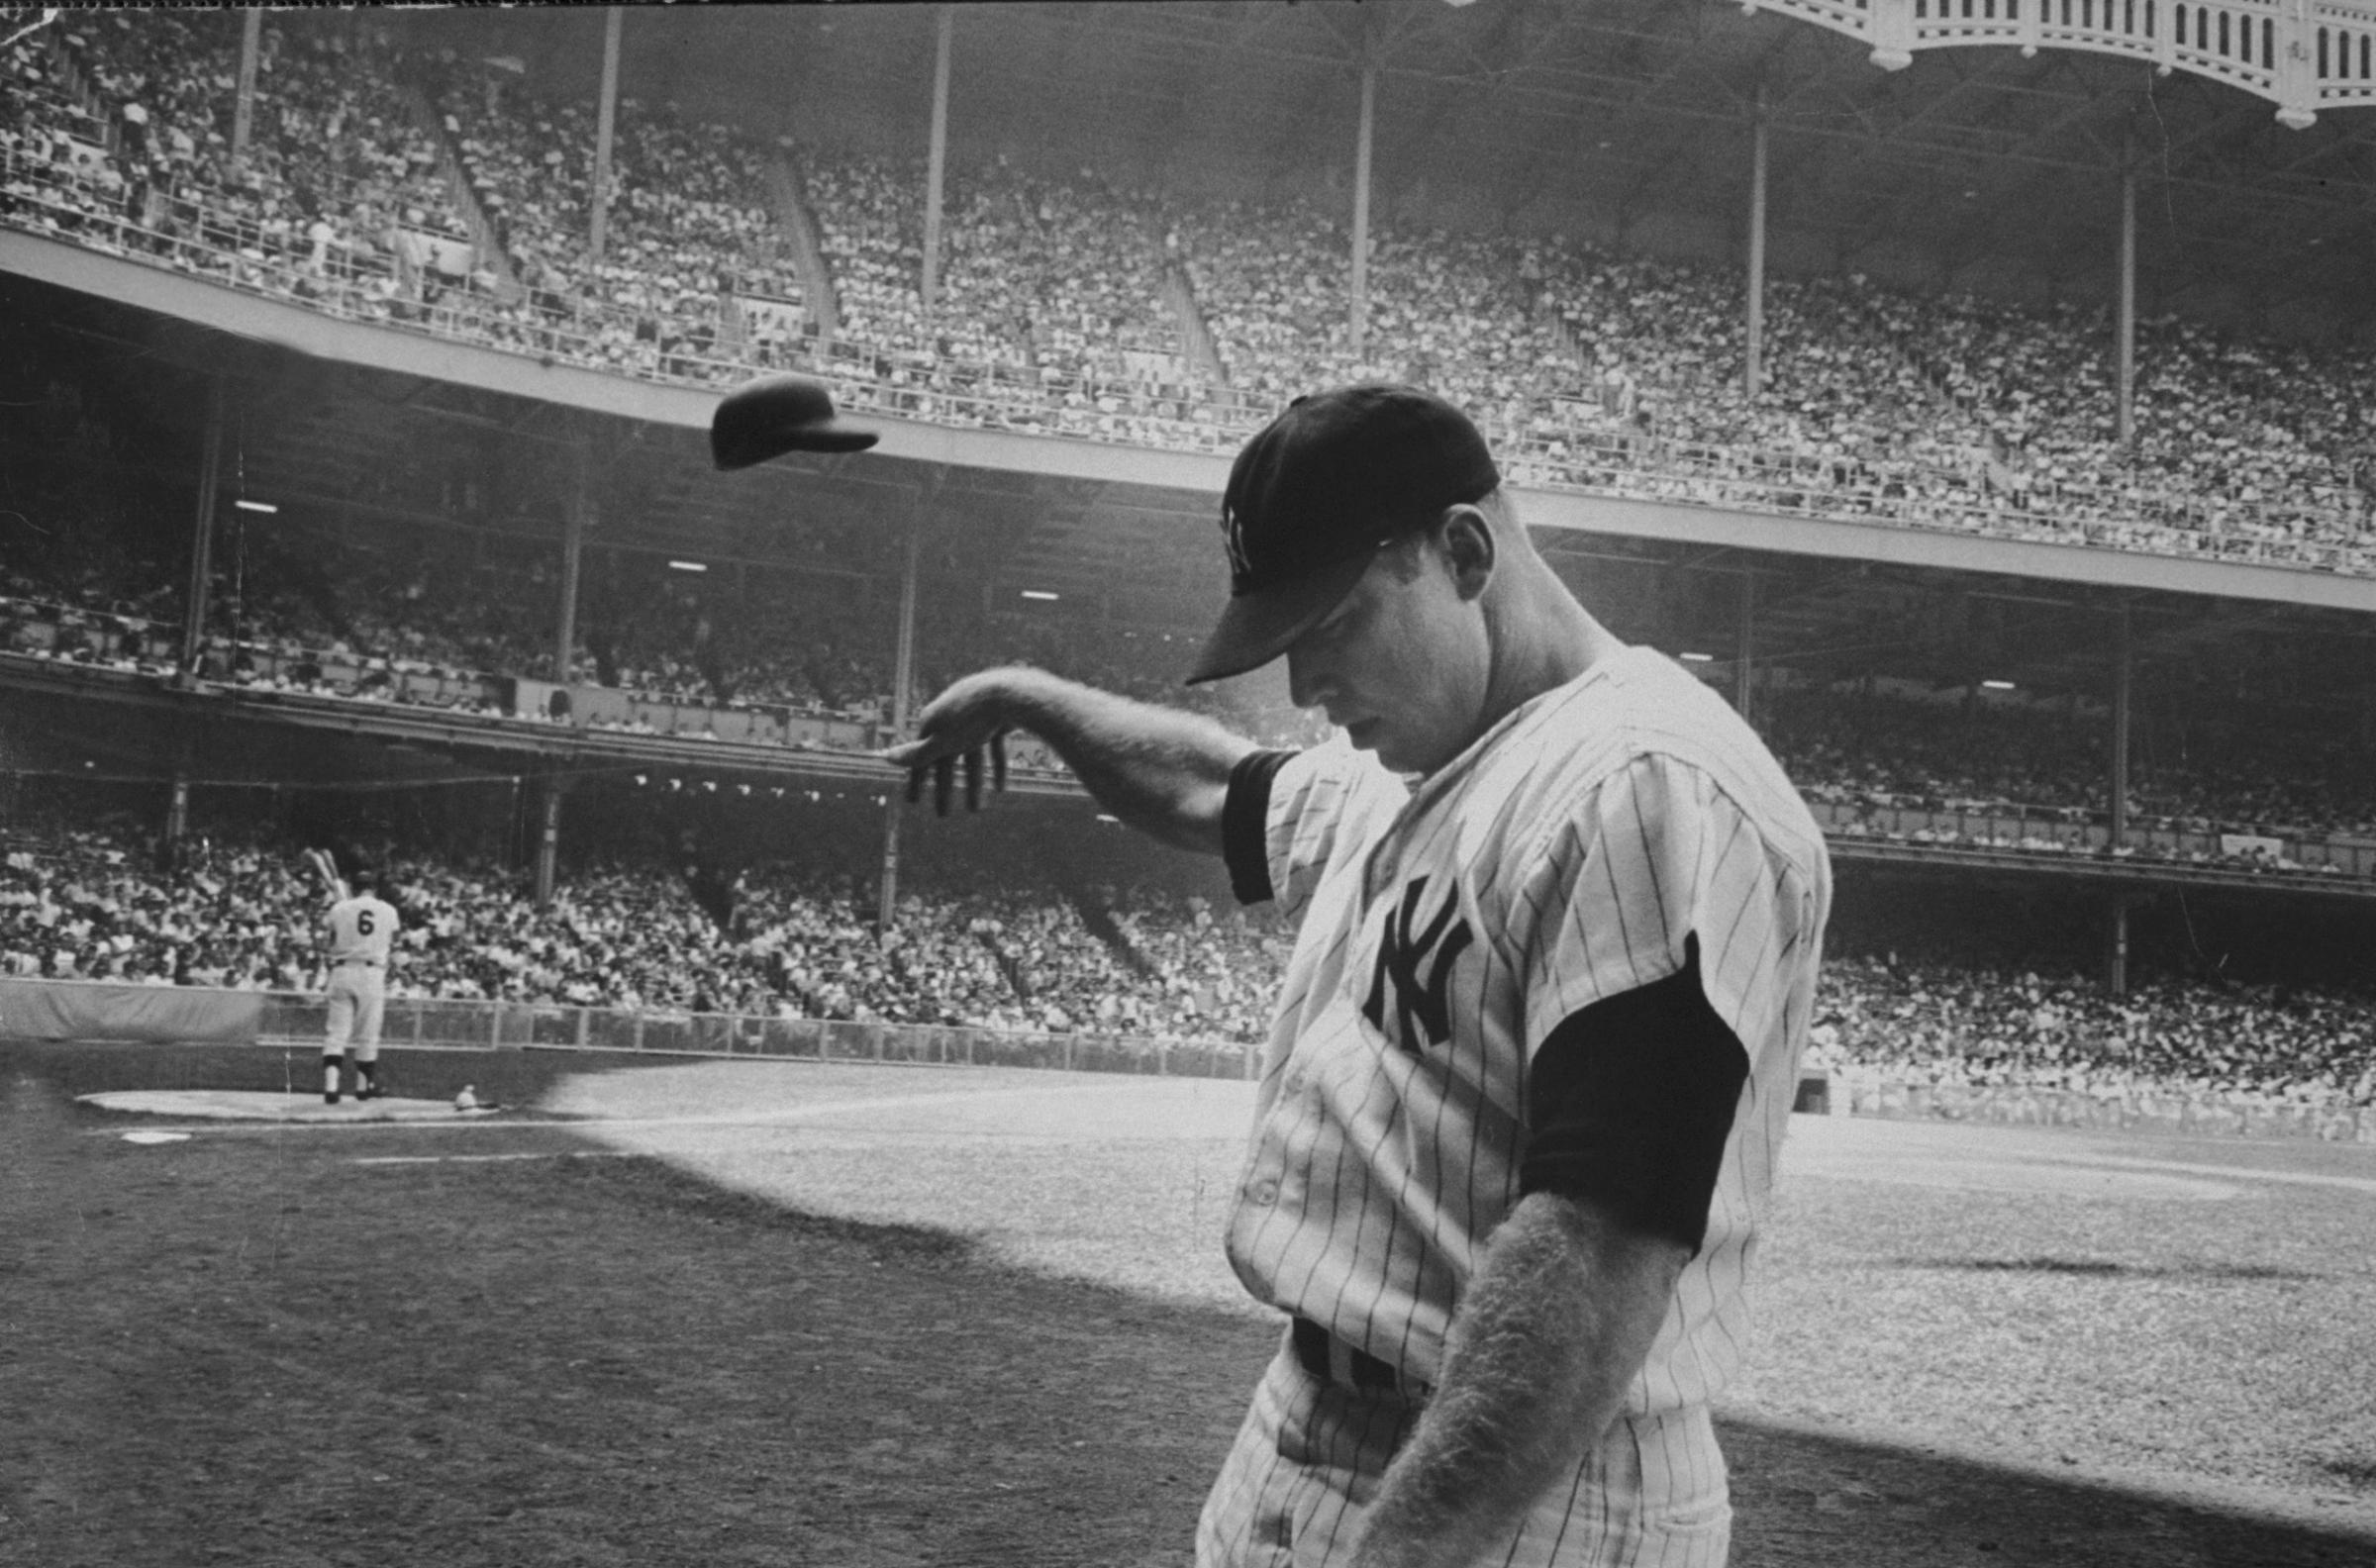 After a weak at-bat, Mickey Mantle flings his helmet away in disgust, June 25, 1965.